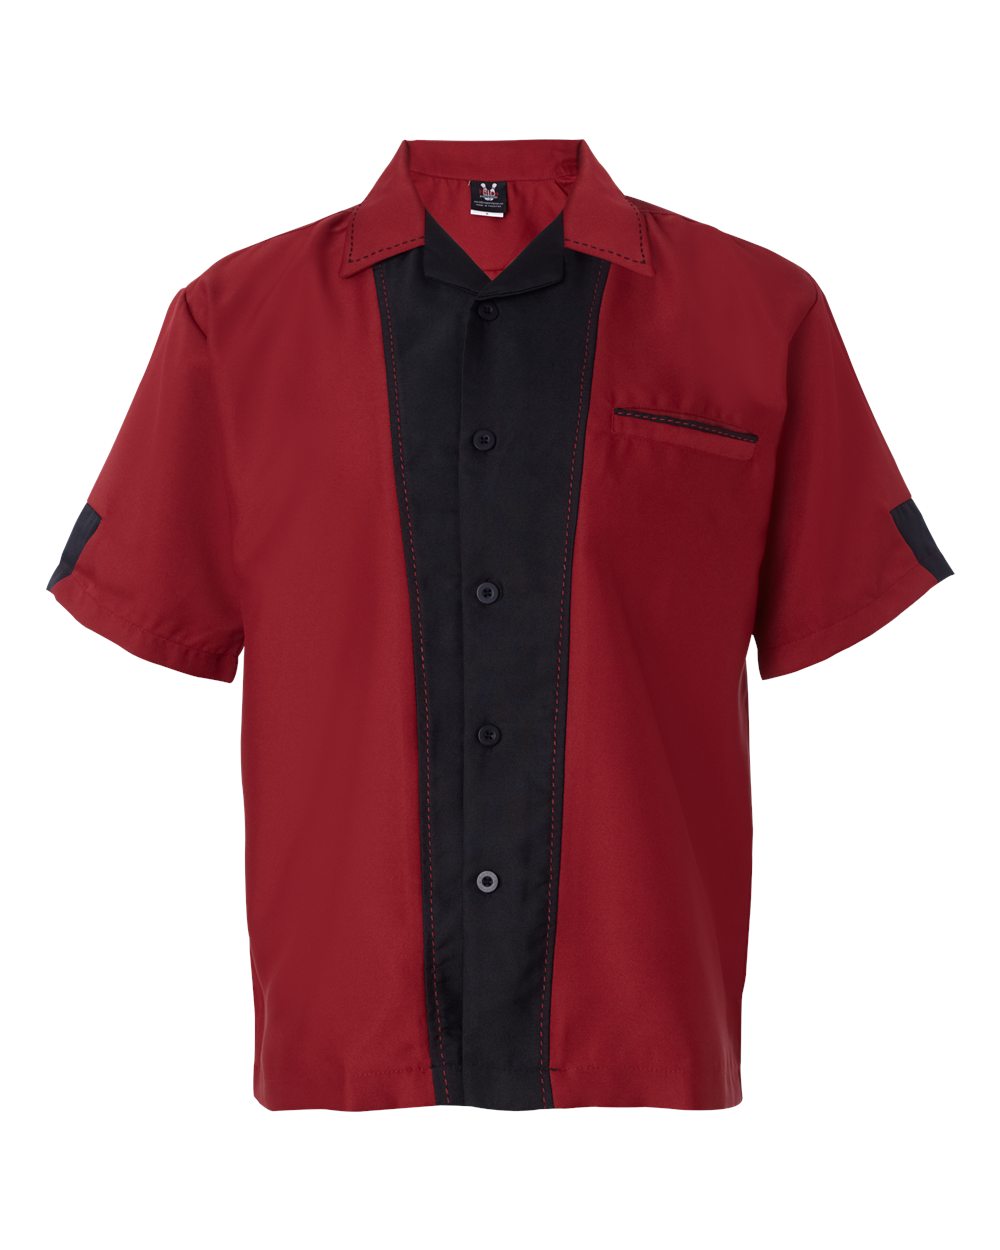 Hilton HP2245-Monterey Bowling Shirt